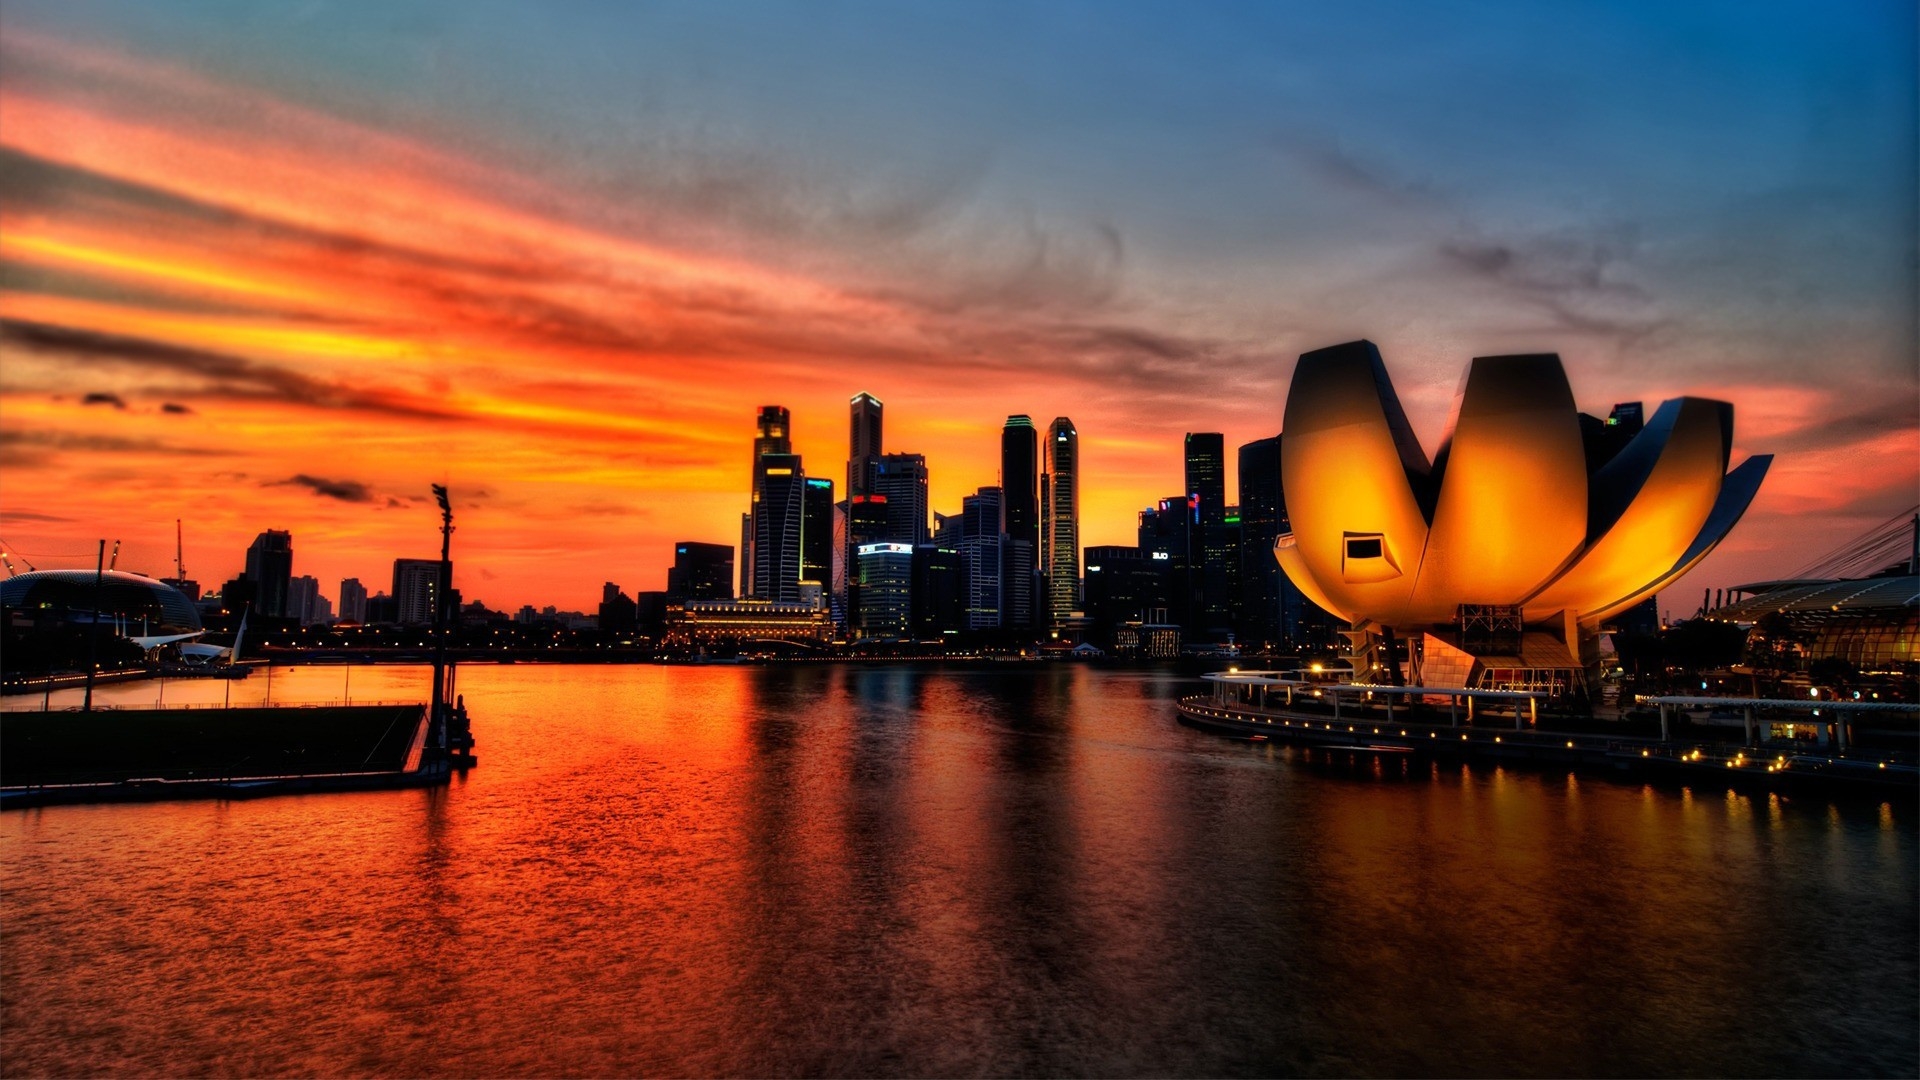 تور مالزی با پرواز مستقیم و اقامت 7 روزه در بهترین هتل های کشور مالزی